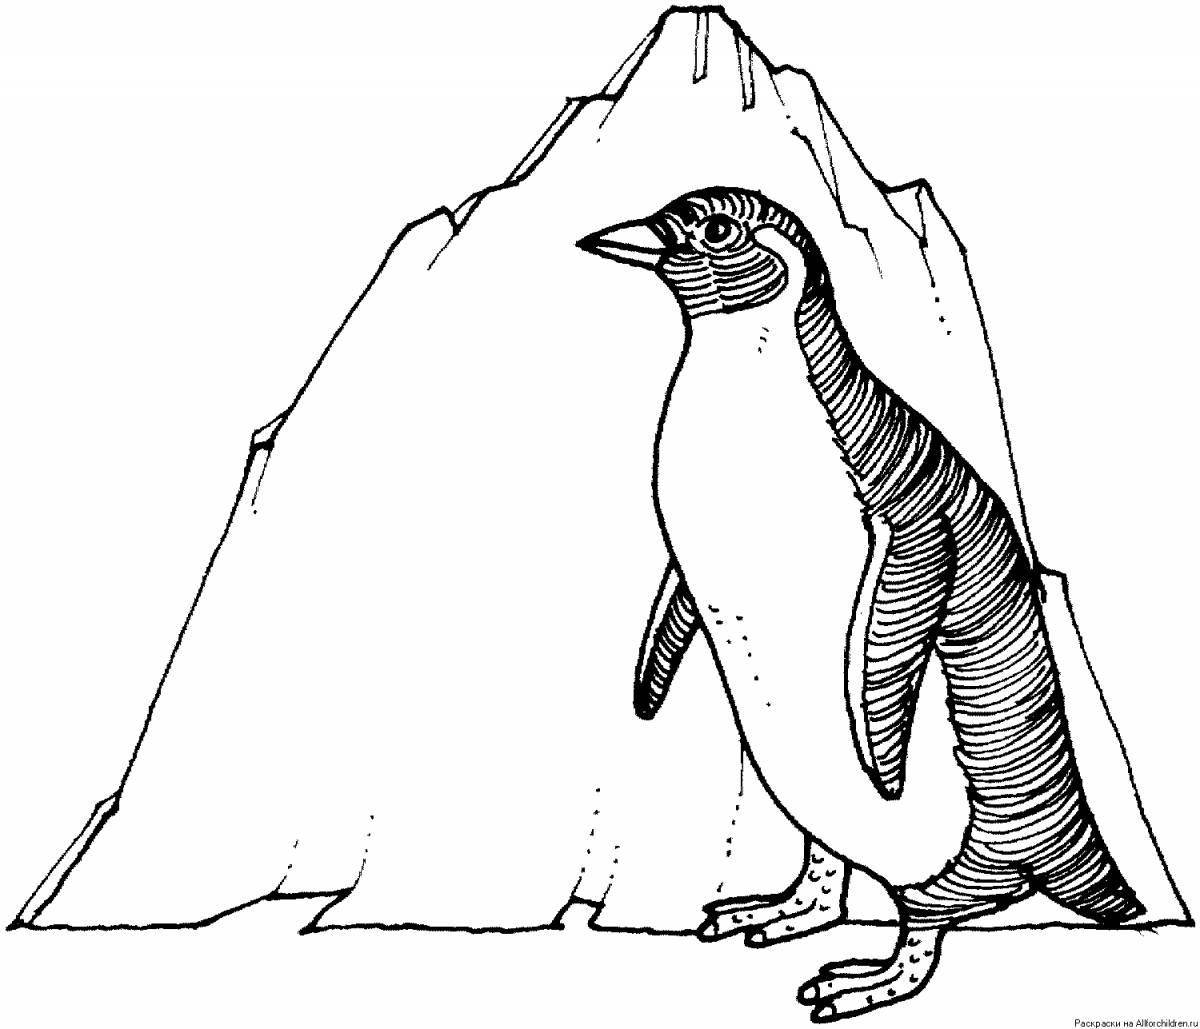 Манящие пингвины антарктиды